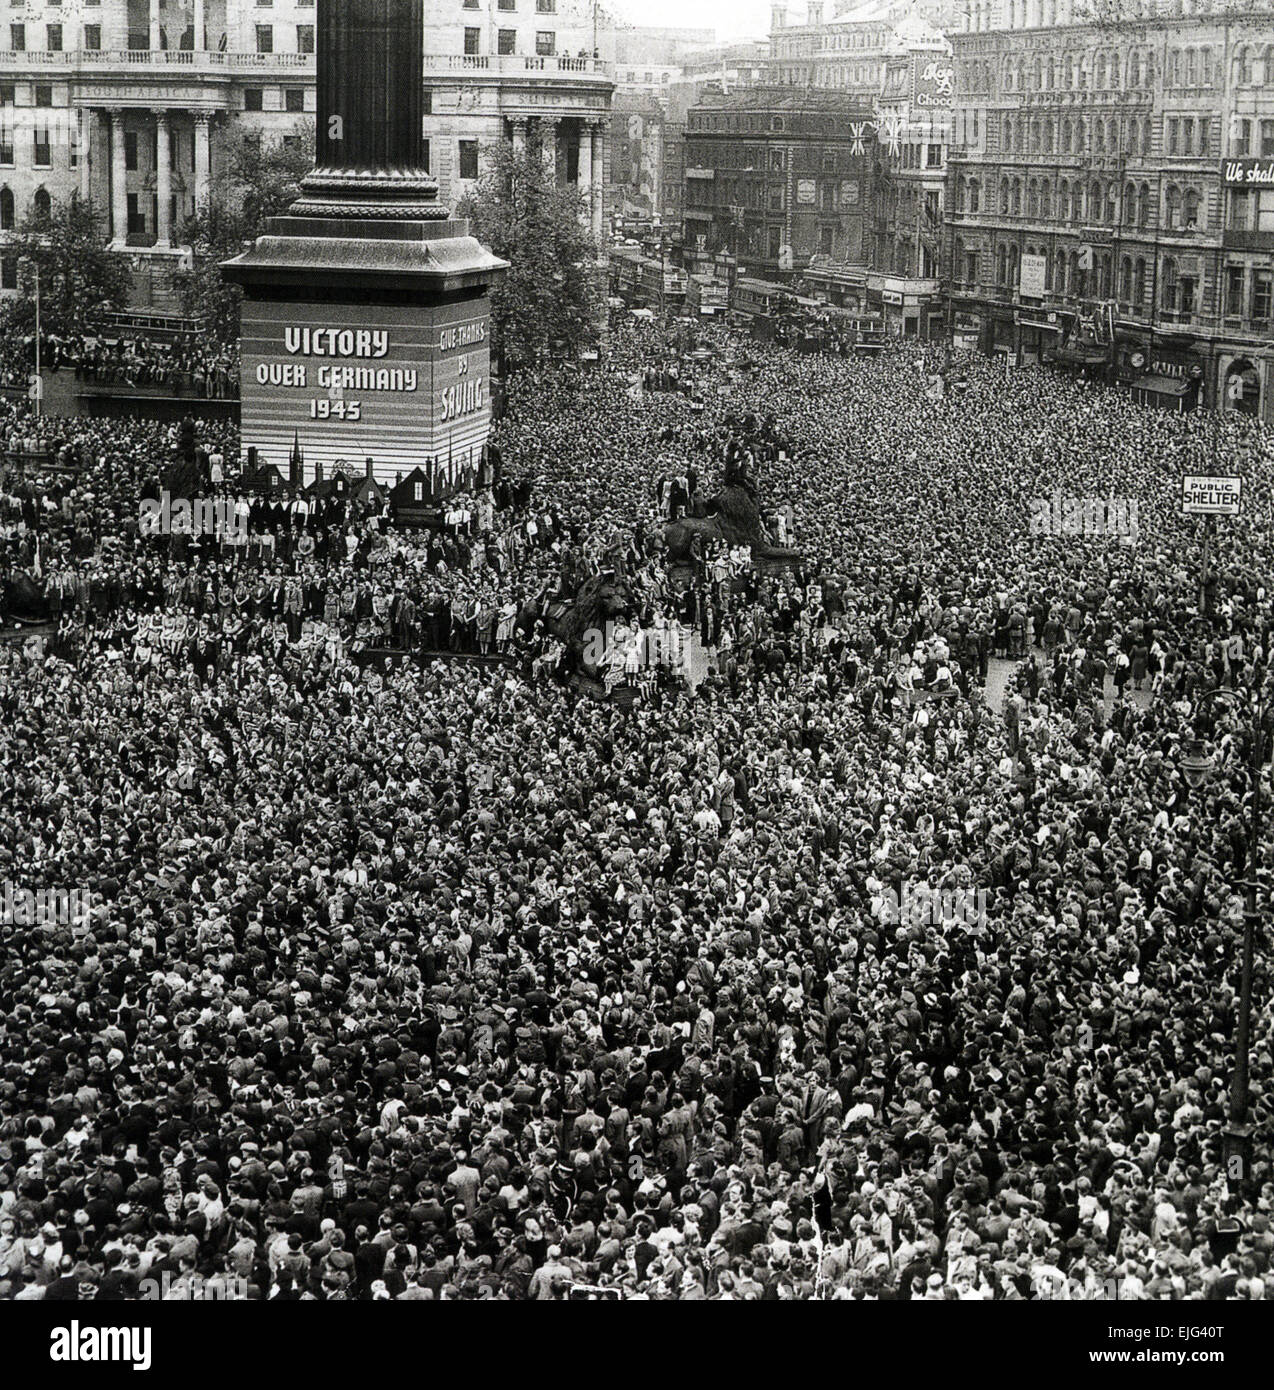 VE DAY 8 May 1945 - celebrations in Trafalgar Square Stock Photo